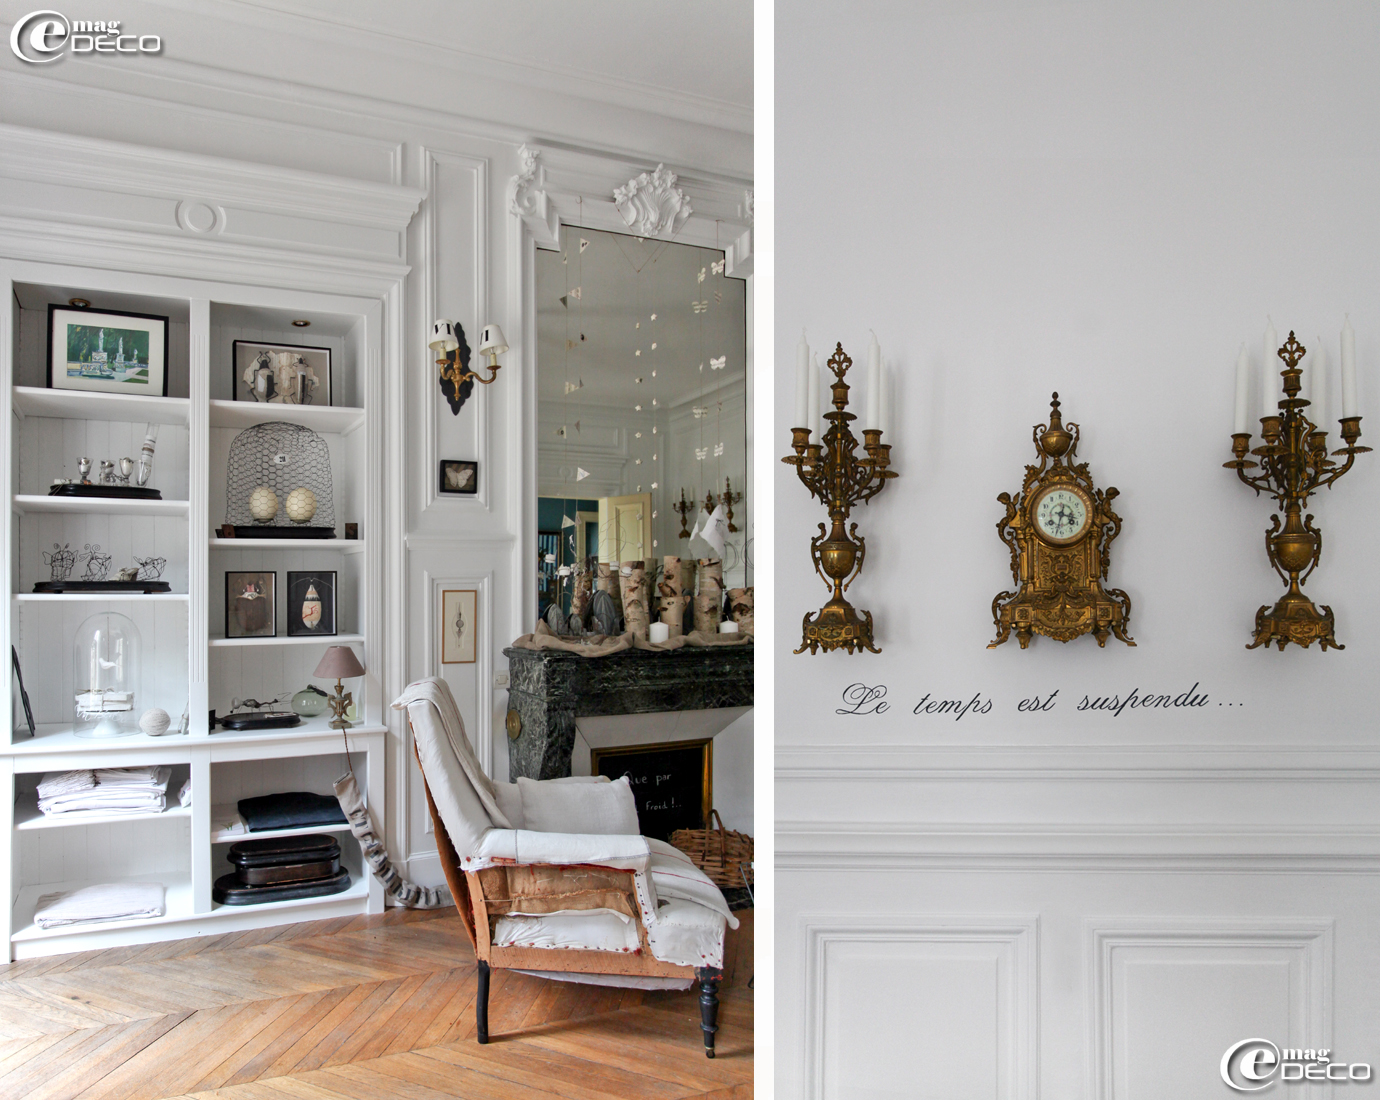 Un placard du salon se transforme en cabinet de curiosités, une horloge et ses chandeliers s'accrochent sur un mur